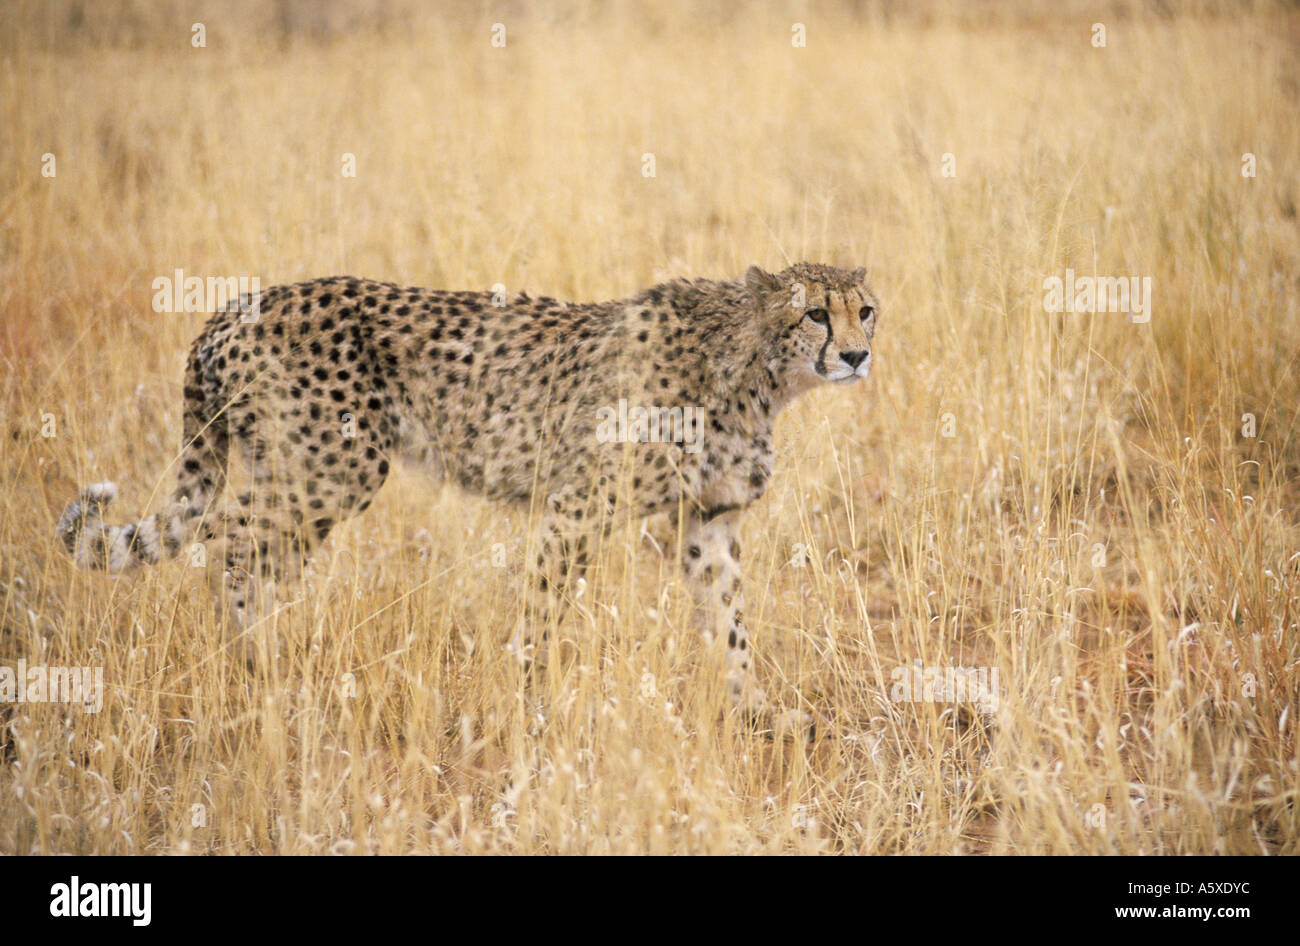 Cheetah and cub in Grass Masai Mara National Park Kenya Stock Photo